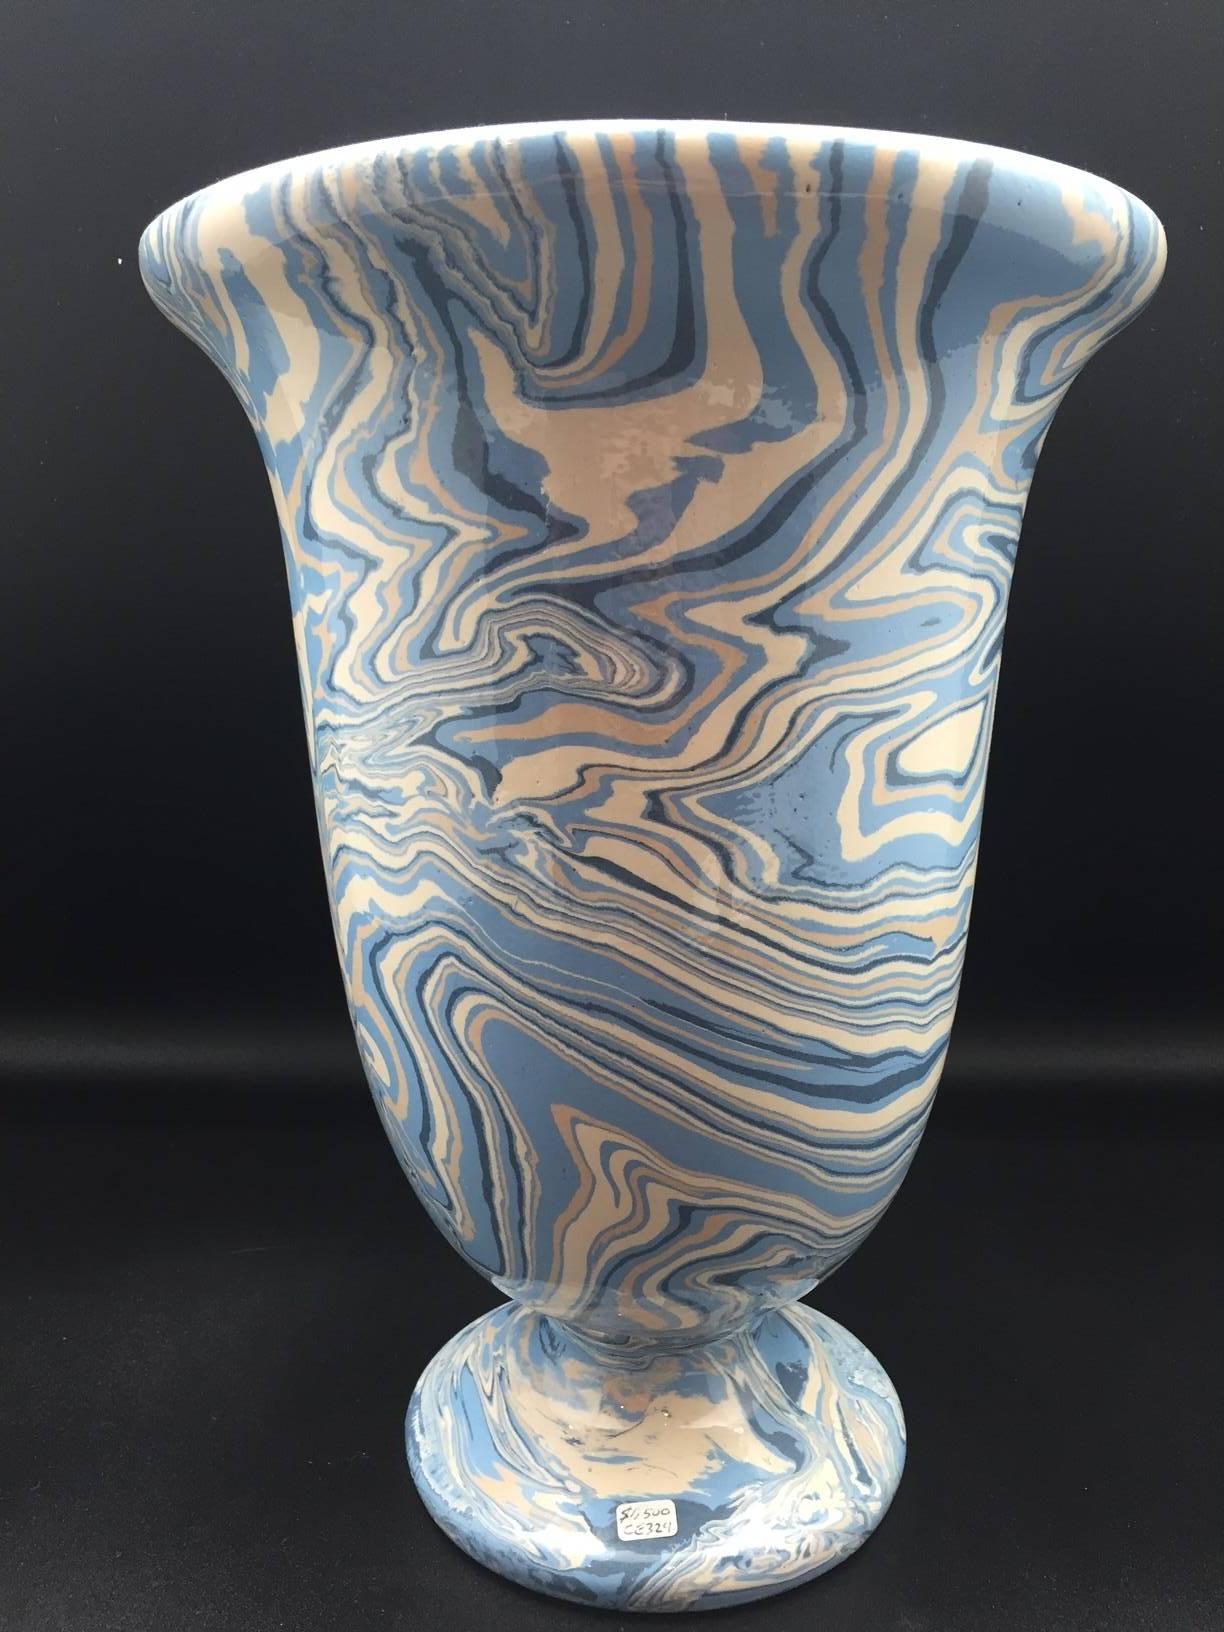 Glazed Marbleized Blue Apt Style Faience Medicis Vase by Sylvie Saint-André Perrin